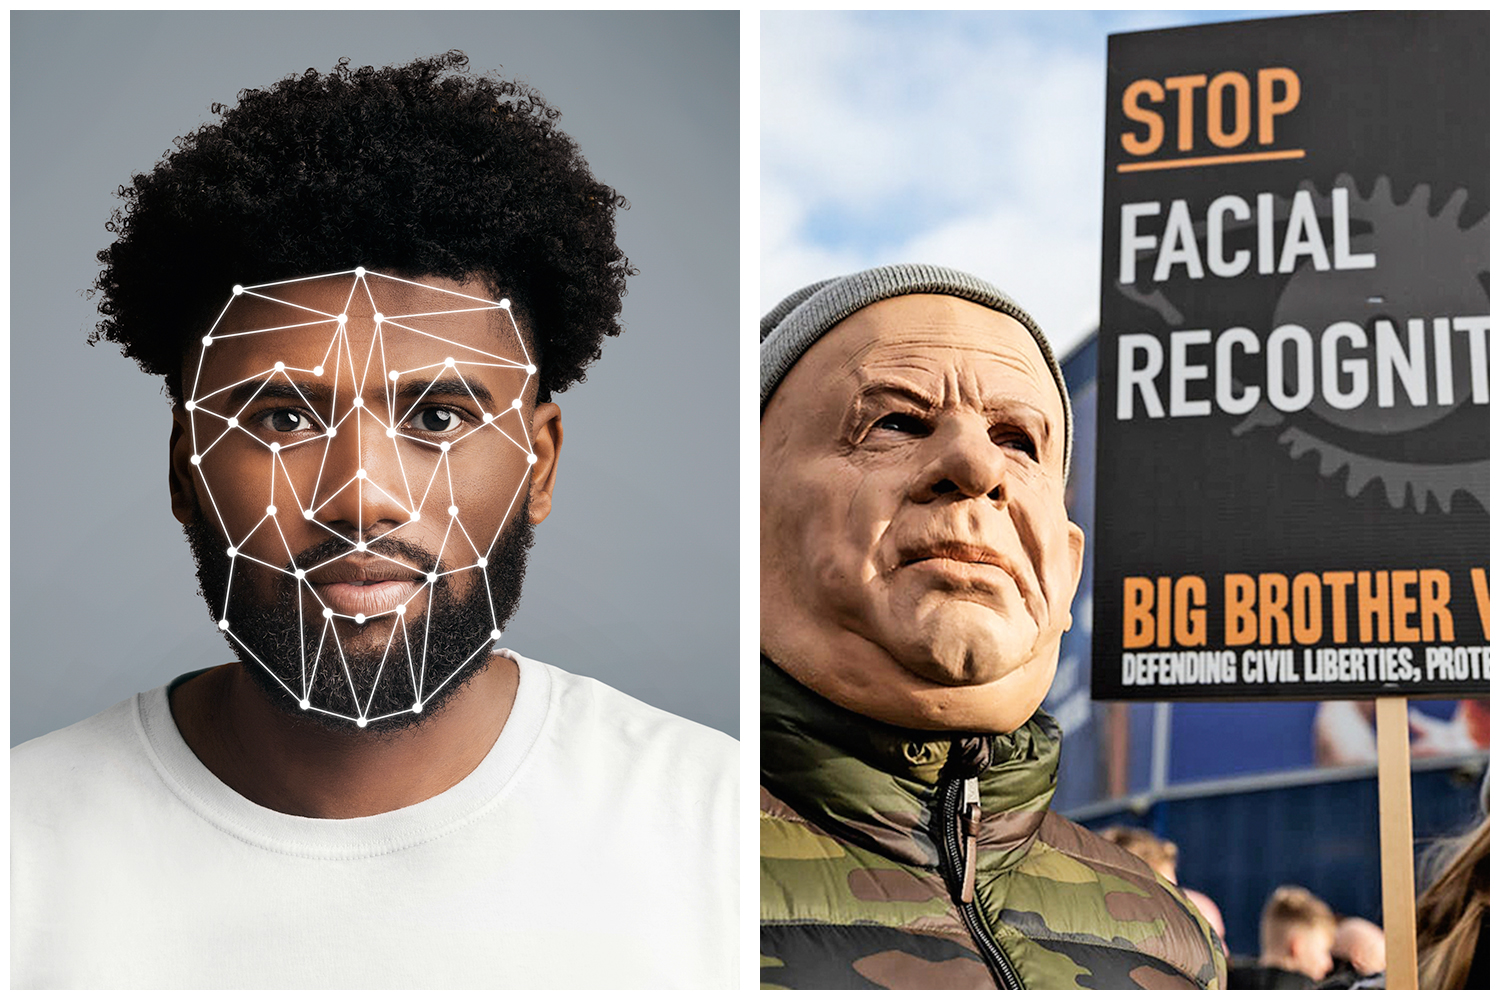 Empresas abandonam reconhecimento facial por identificações ...